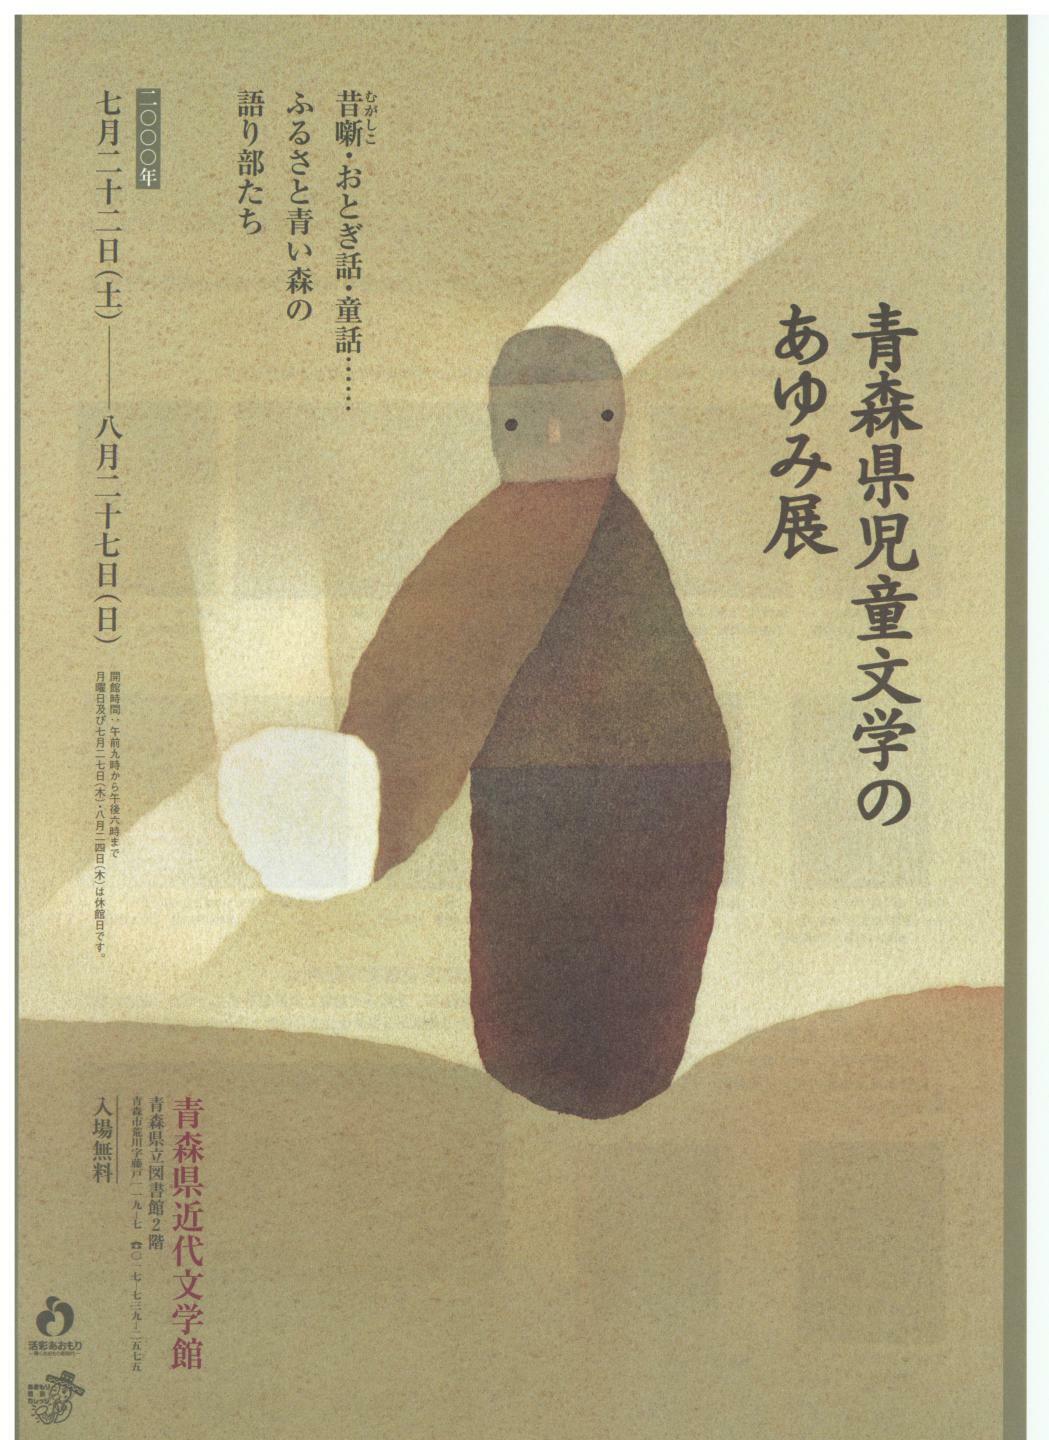 青森県児童文学のあゆみ展フライヤー表面の画像